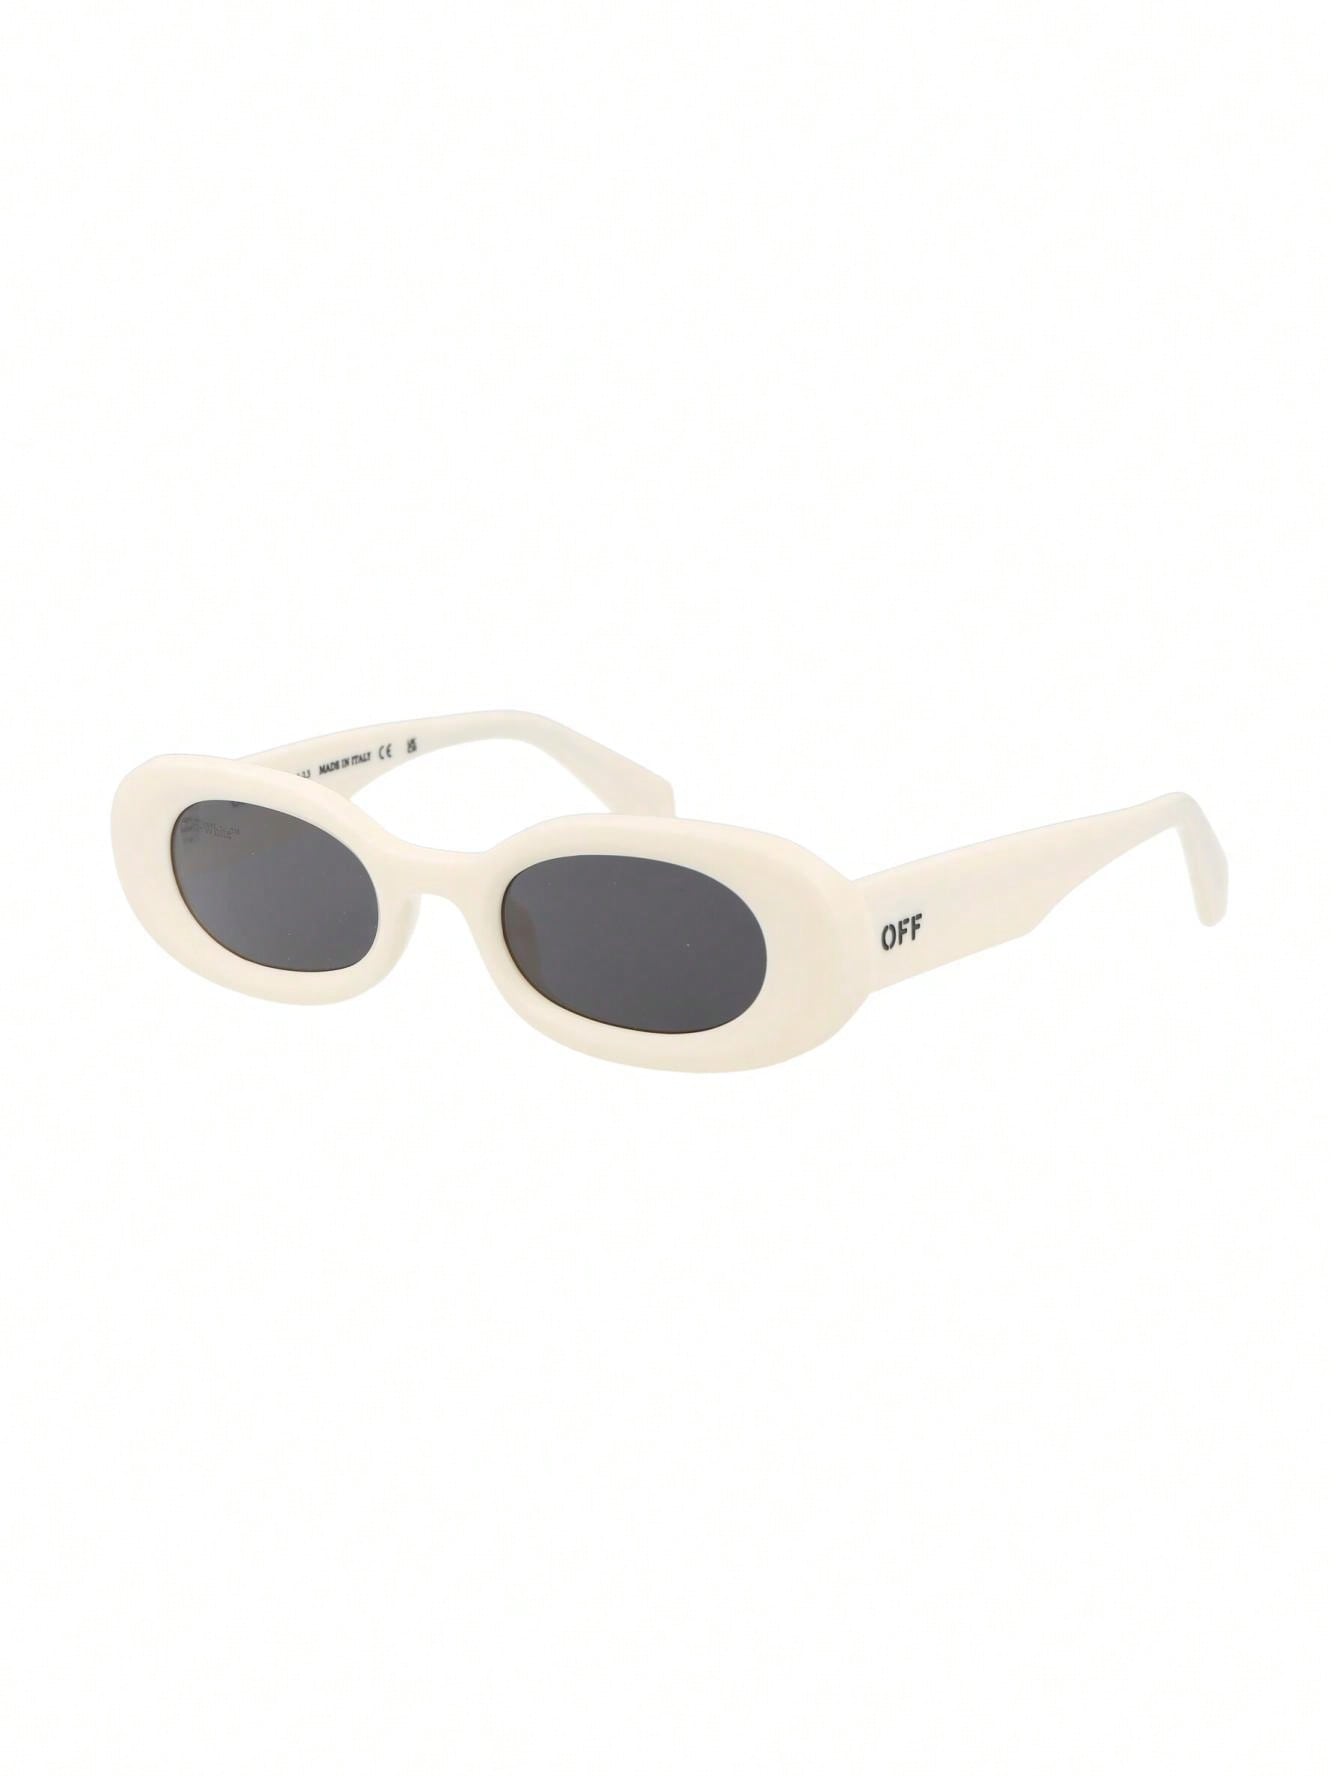 мужские солнцезащитные очки off white черные oeri094f23pla0010107 черный Мужские солнцезащитные очки Off-White БЕЛЫЕ OERI087F23PLA0010107, белый